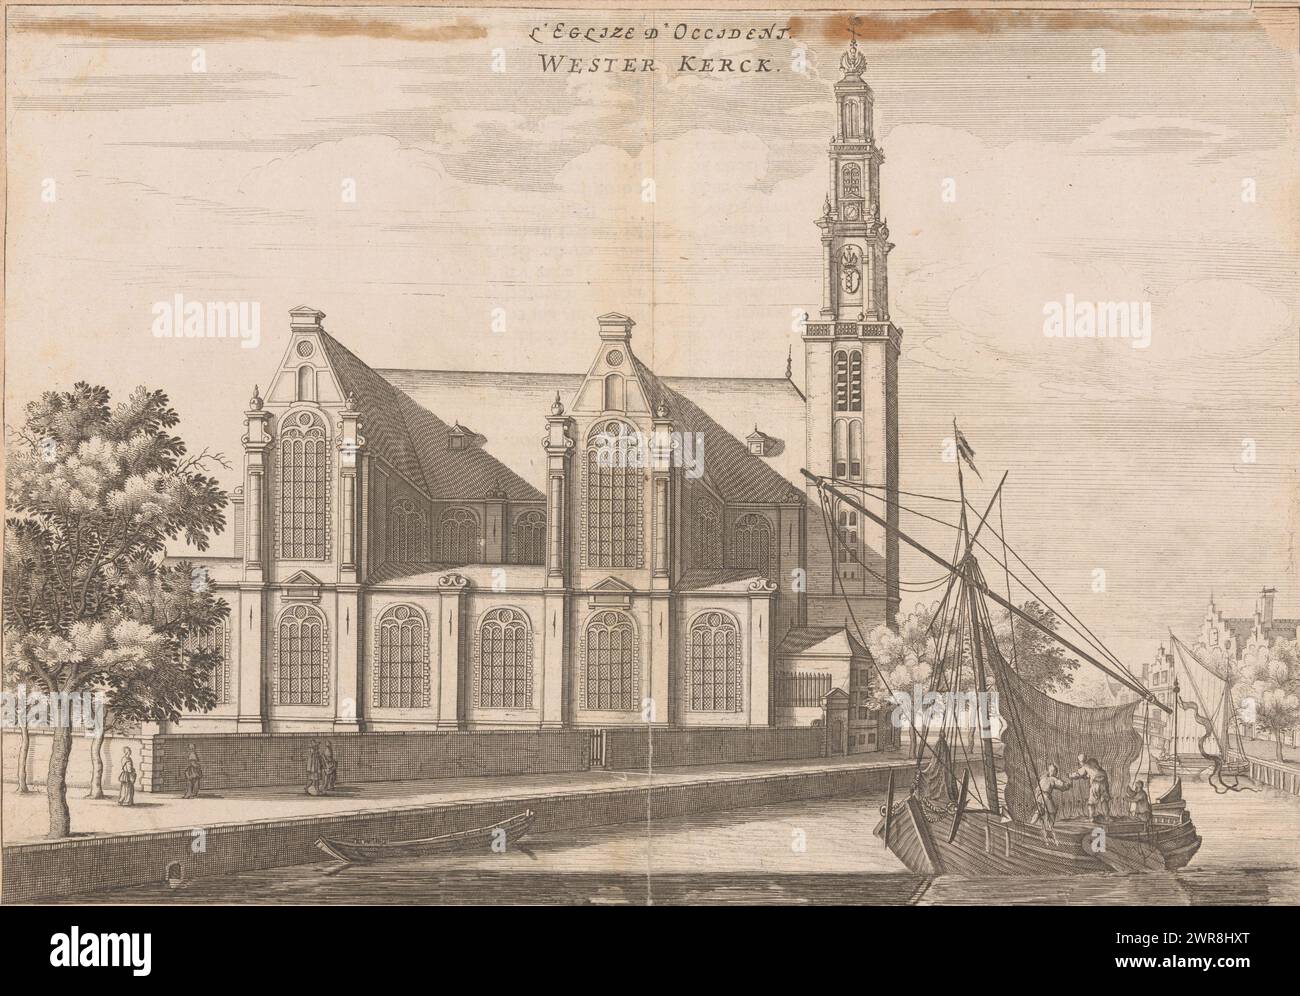 Ansicht der Westerkerk in Amsterdam von der Prinsengracht, L'Eglize d'Occident / Wester Kerck (Titel auf Objekt), Druckerei: Anonym, um 1650 - um 1700, Papier, Ätzen, Buchdruck, Höhe 200 mm x Breite 291 mm, Druck Stockfoto